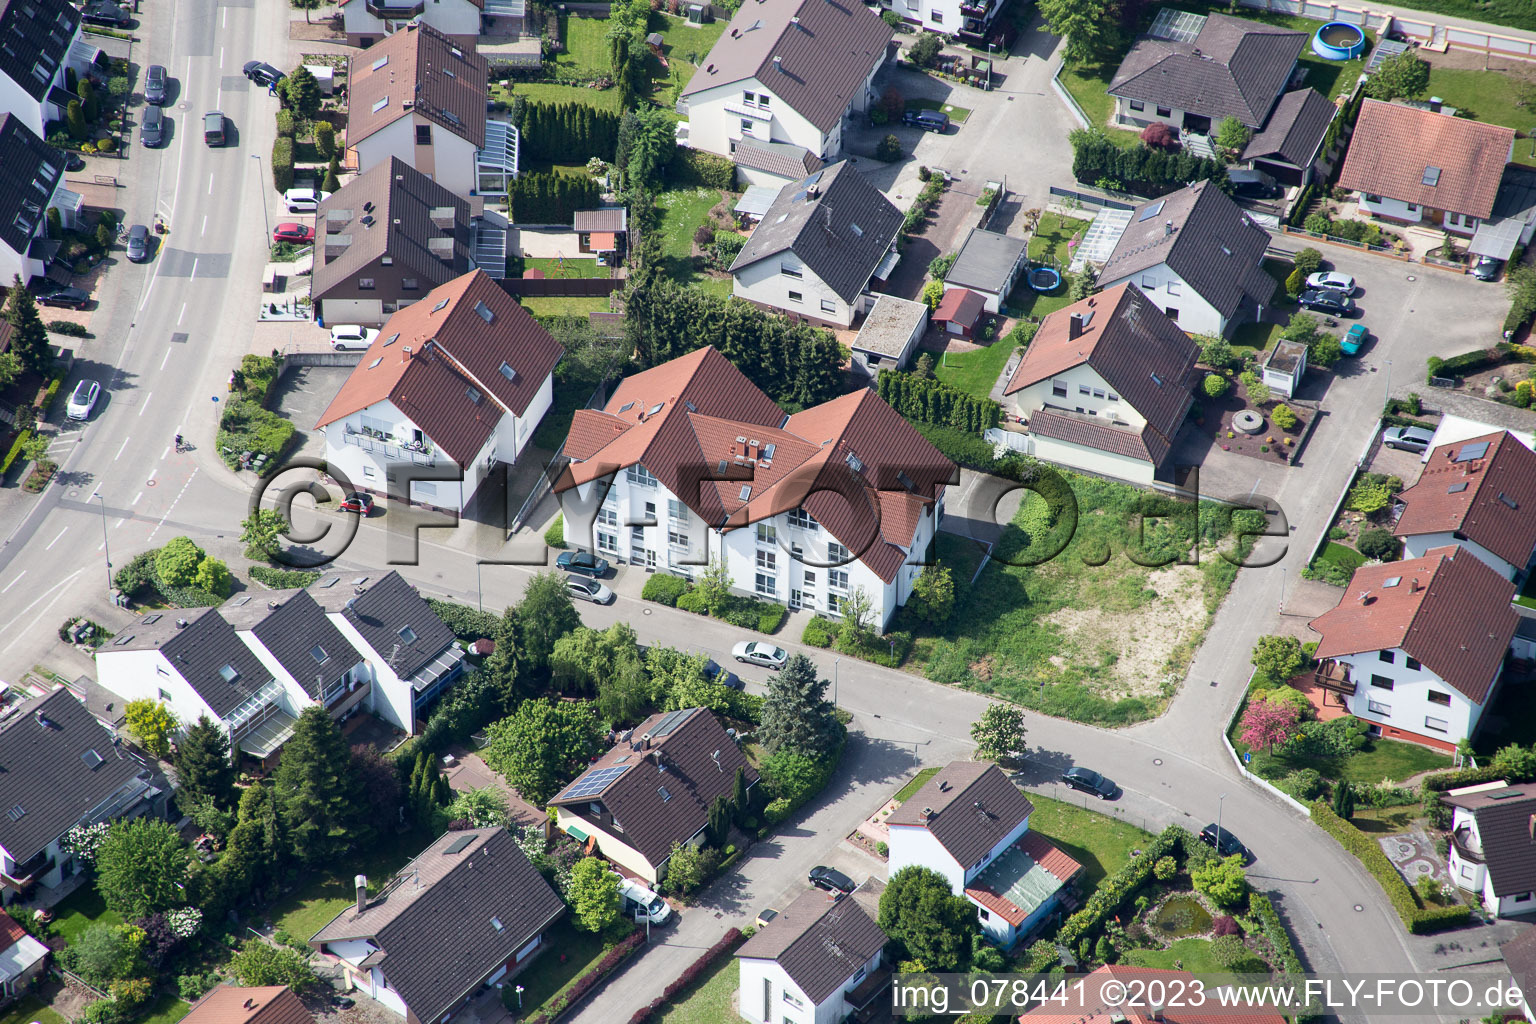 Hagenbach im Bundesland Rheinland-Pfalz, Deutschland von oben gesehen